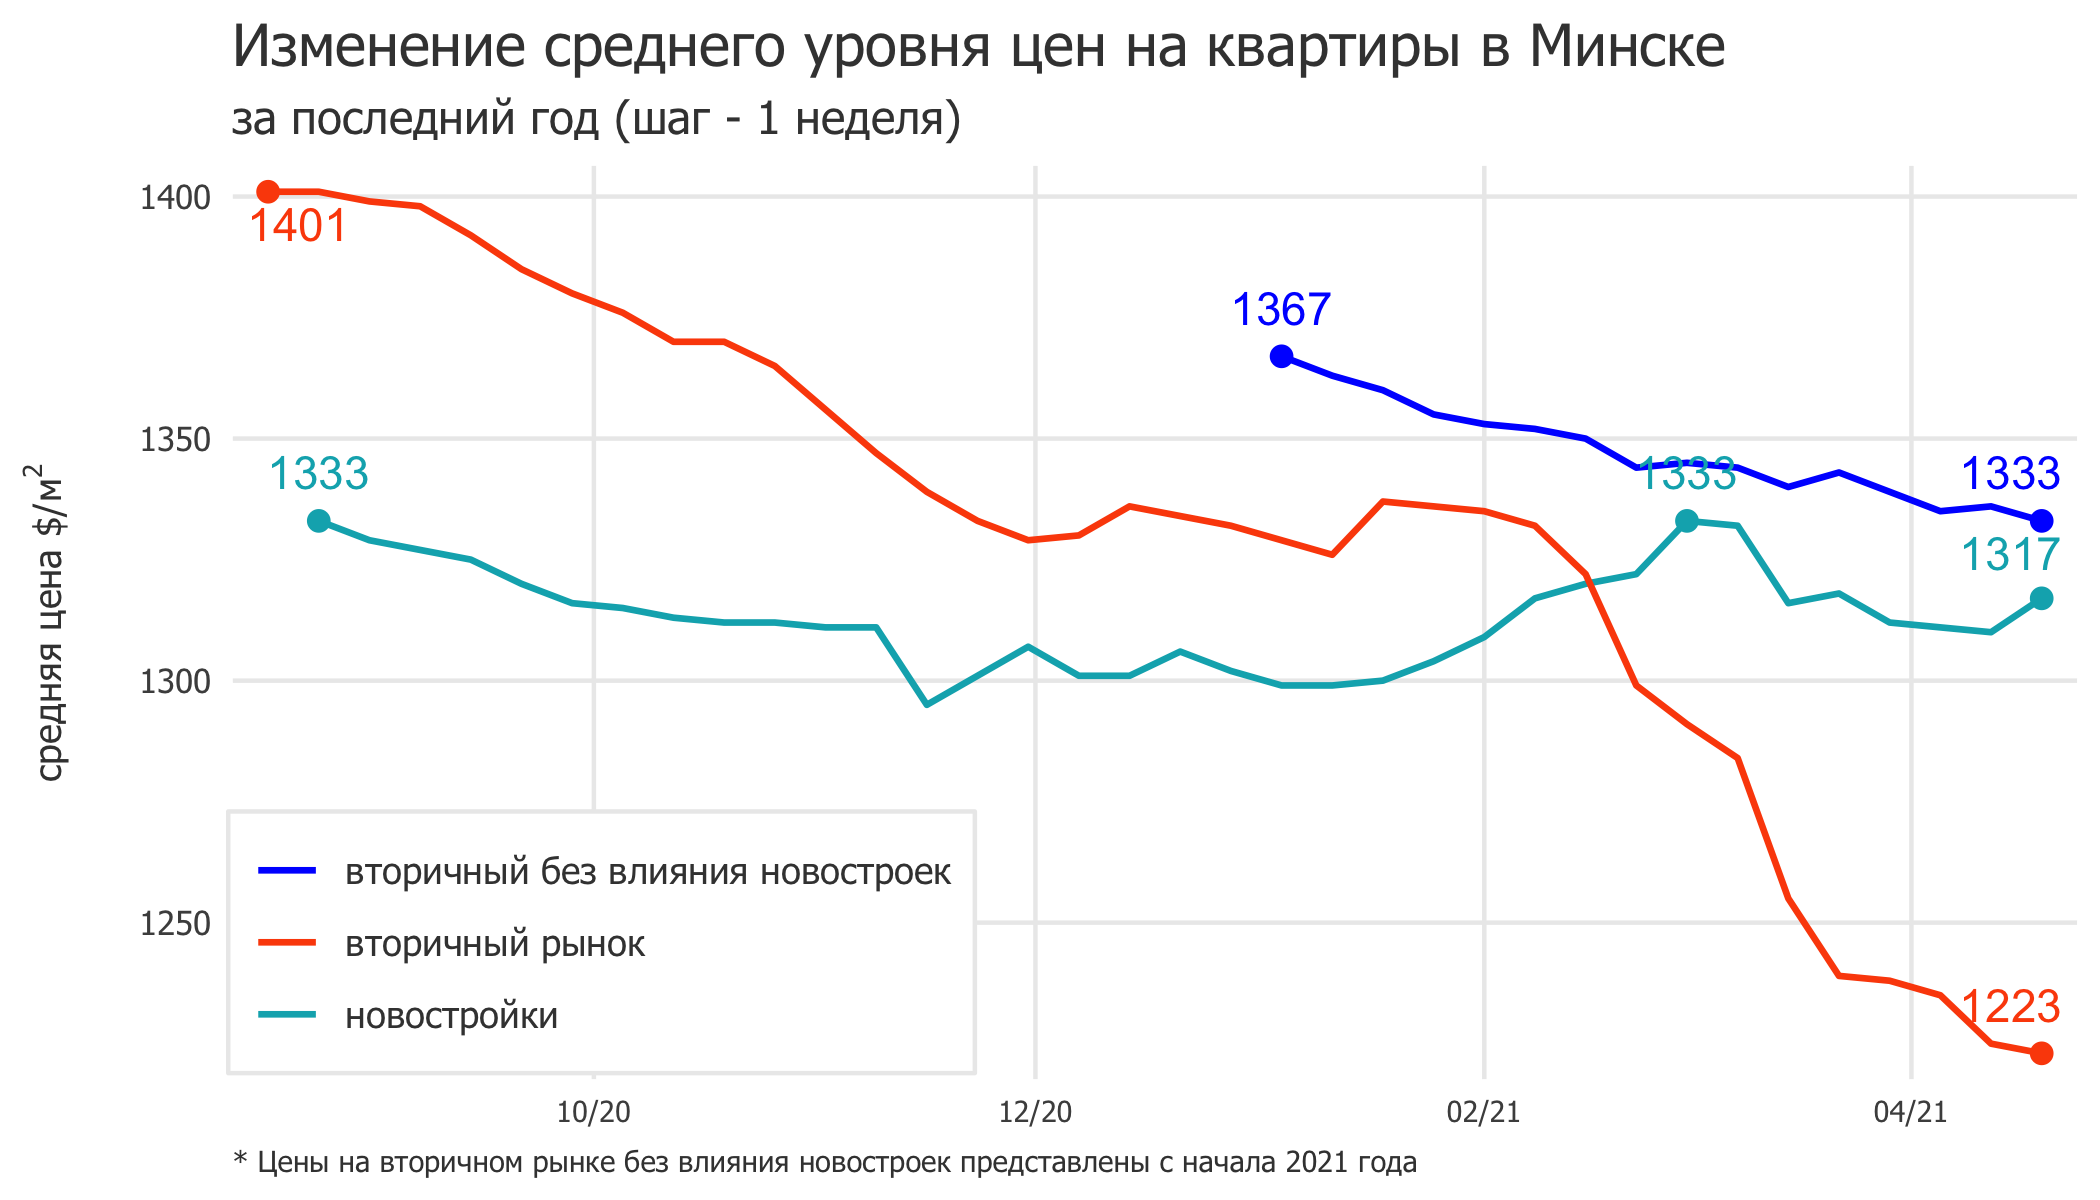 Мониторинг цен предложения квартир в Минске за 12-19 апреля 2021 года